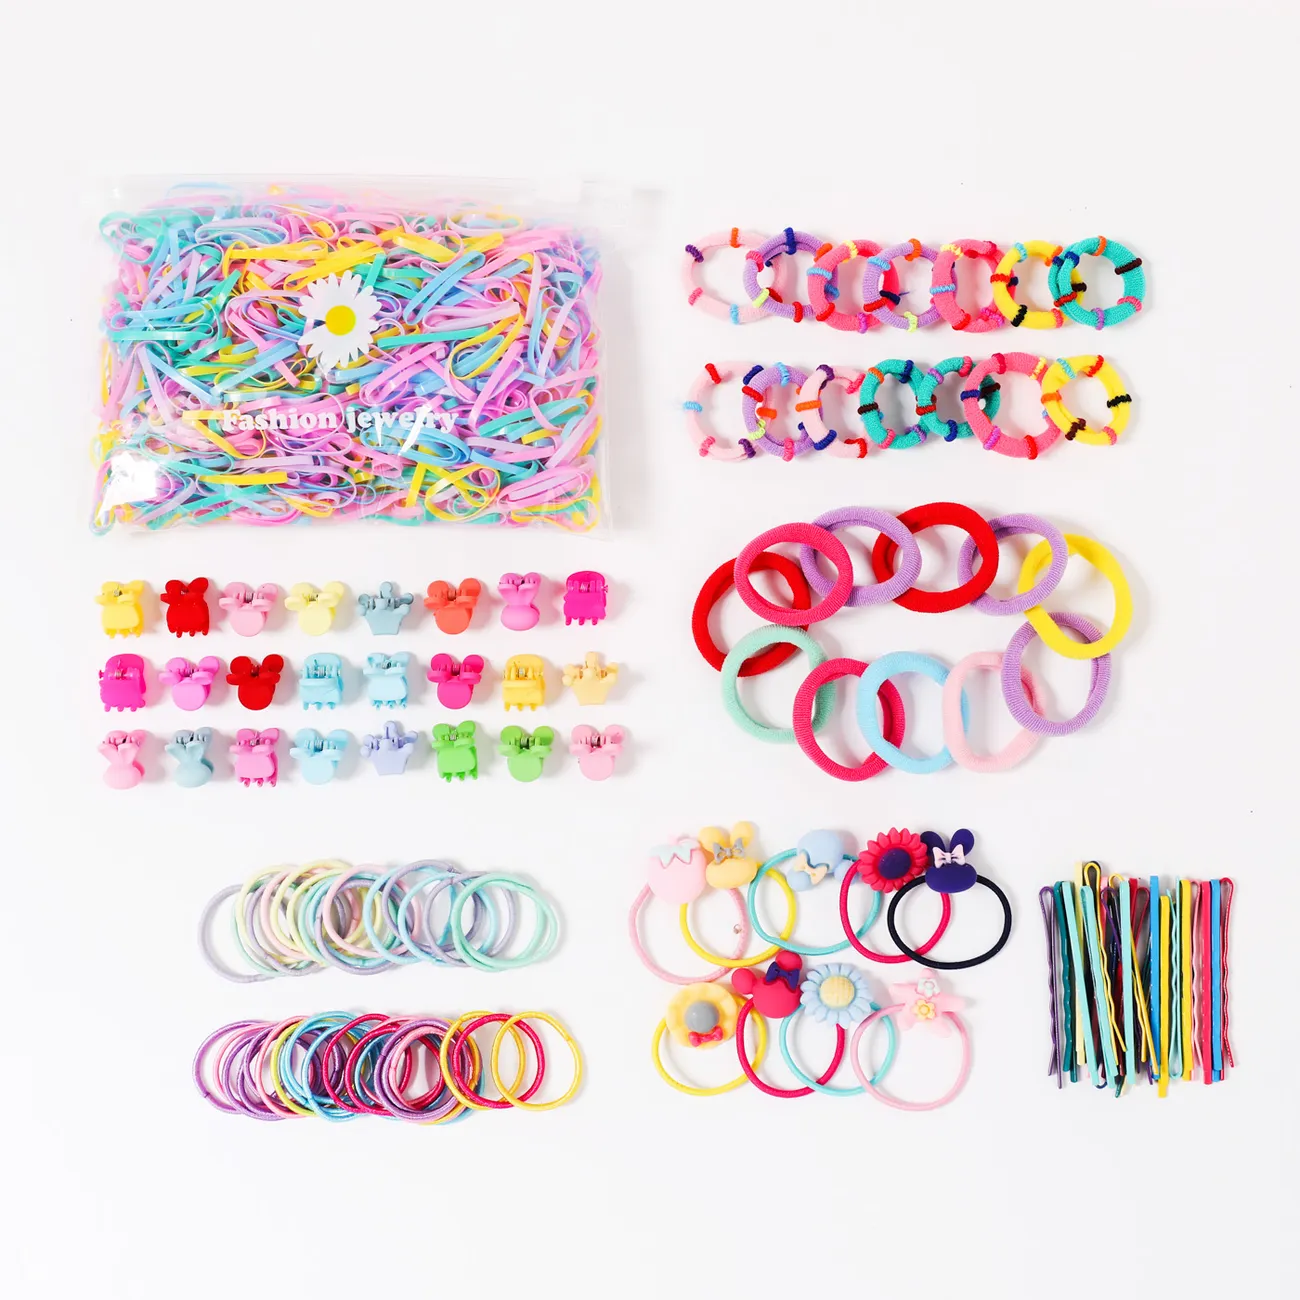 Lot de 1221 ensembles d'accessoires pour cheveux multicolores pour filles Couleur-A big image 1